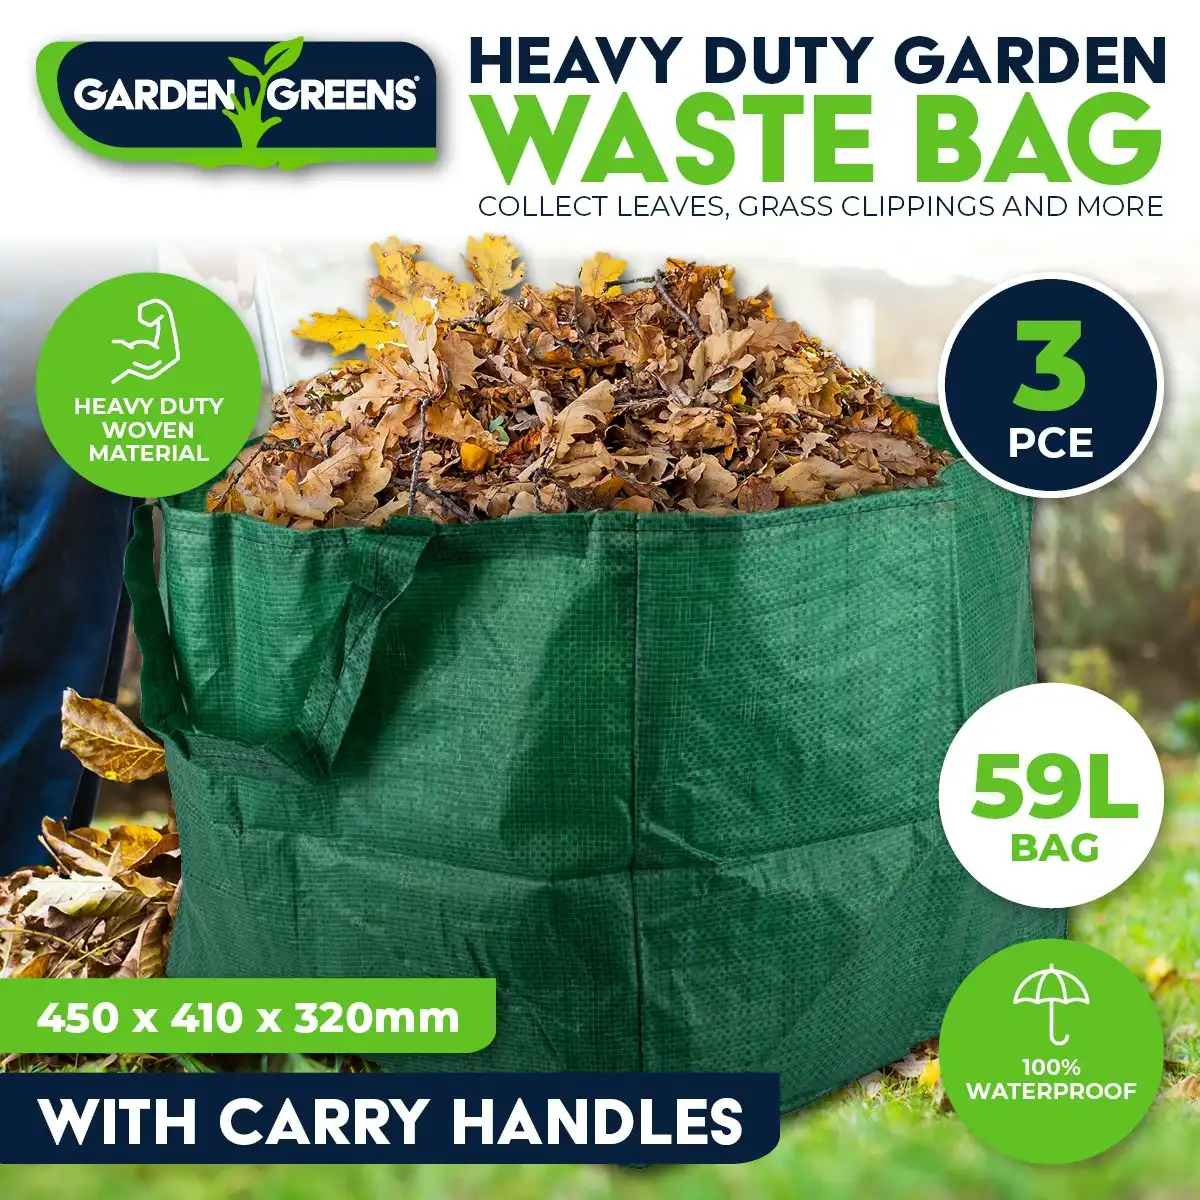 Garden Greens 3PCE Garden Waste Bag Reusable Strong Material Lightweight 59L